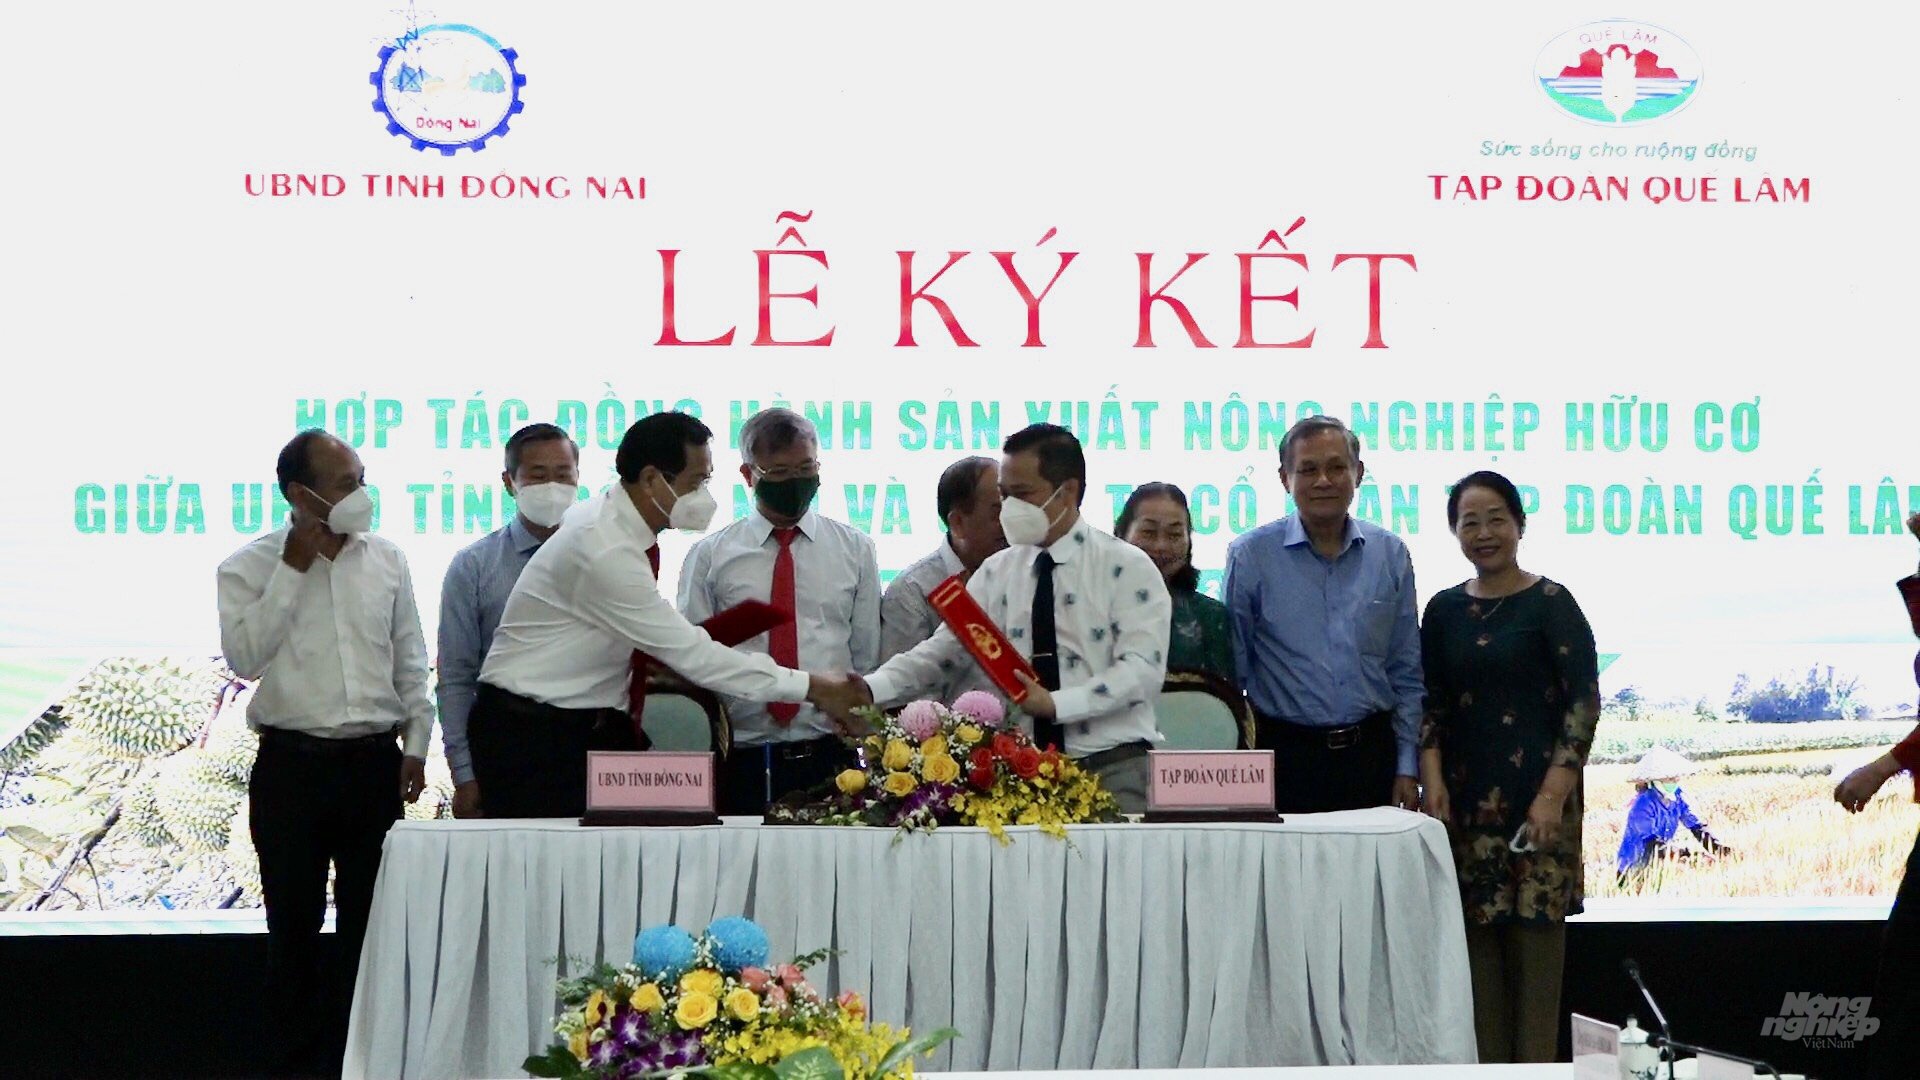 Lễ ký kết hợp tác sản xuất tiêu thụ sản phẩm nông nghiệp hữu cơ giữa UBND tỉnh Đồng Nai và Cty CP Tập đoàn Quế Lâm. Ảnh: Minh Sáng.